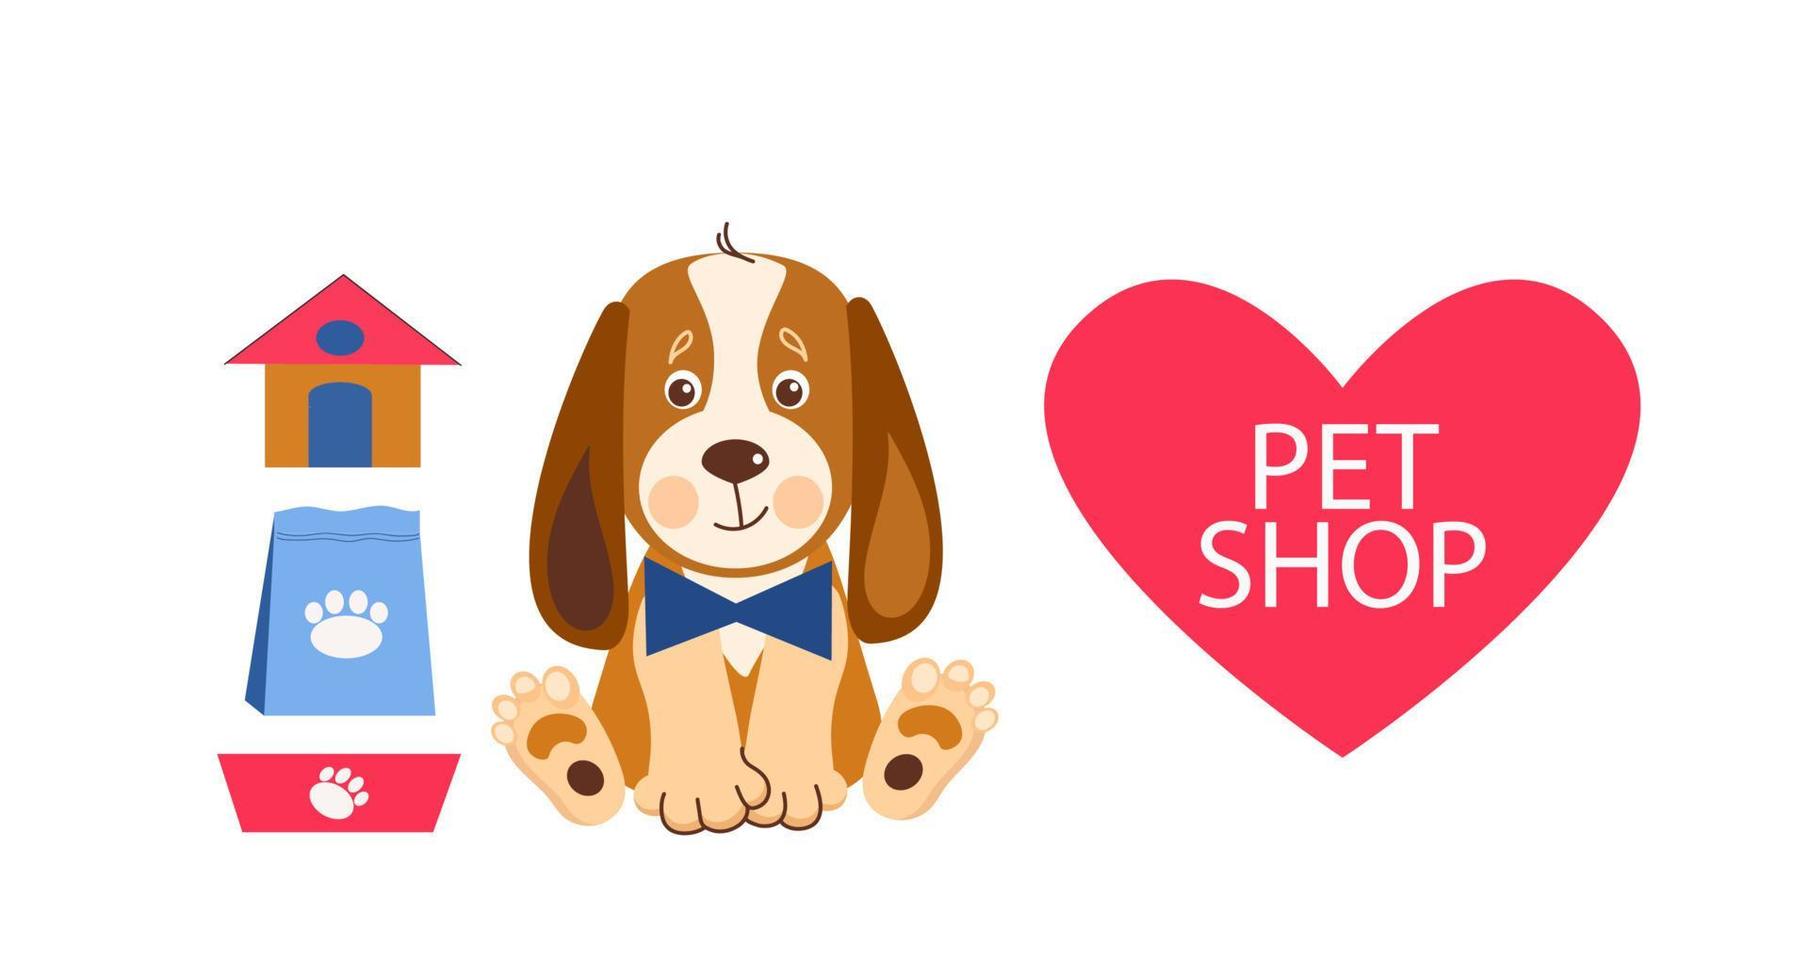 modelo de design de banner de loja de animais. ilustração vetorial dos desenhos animados de gatos, cães, casa, comida. vetor